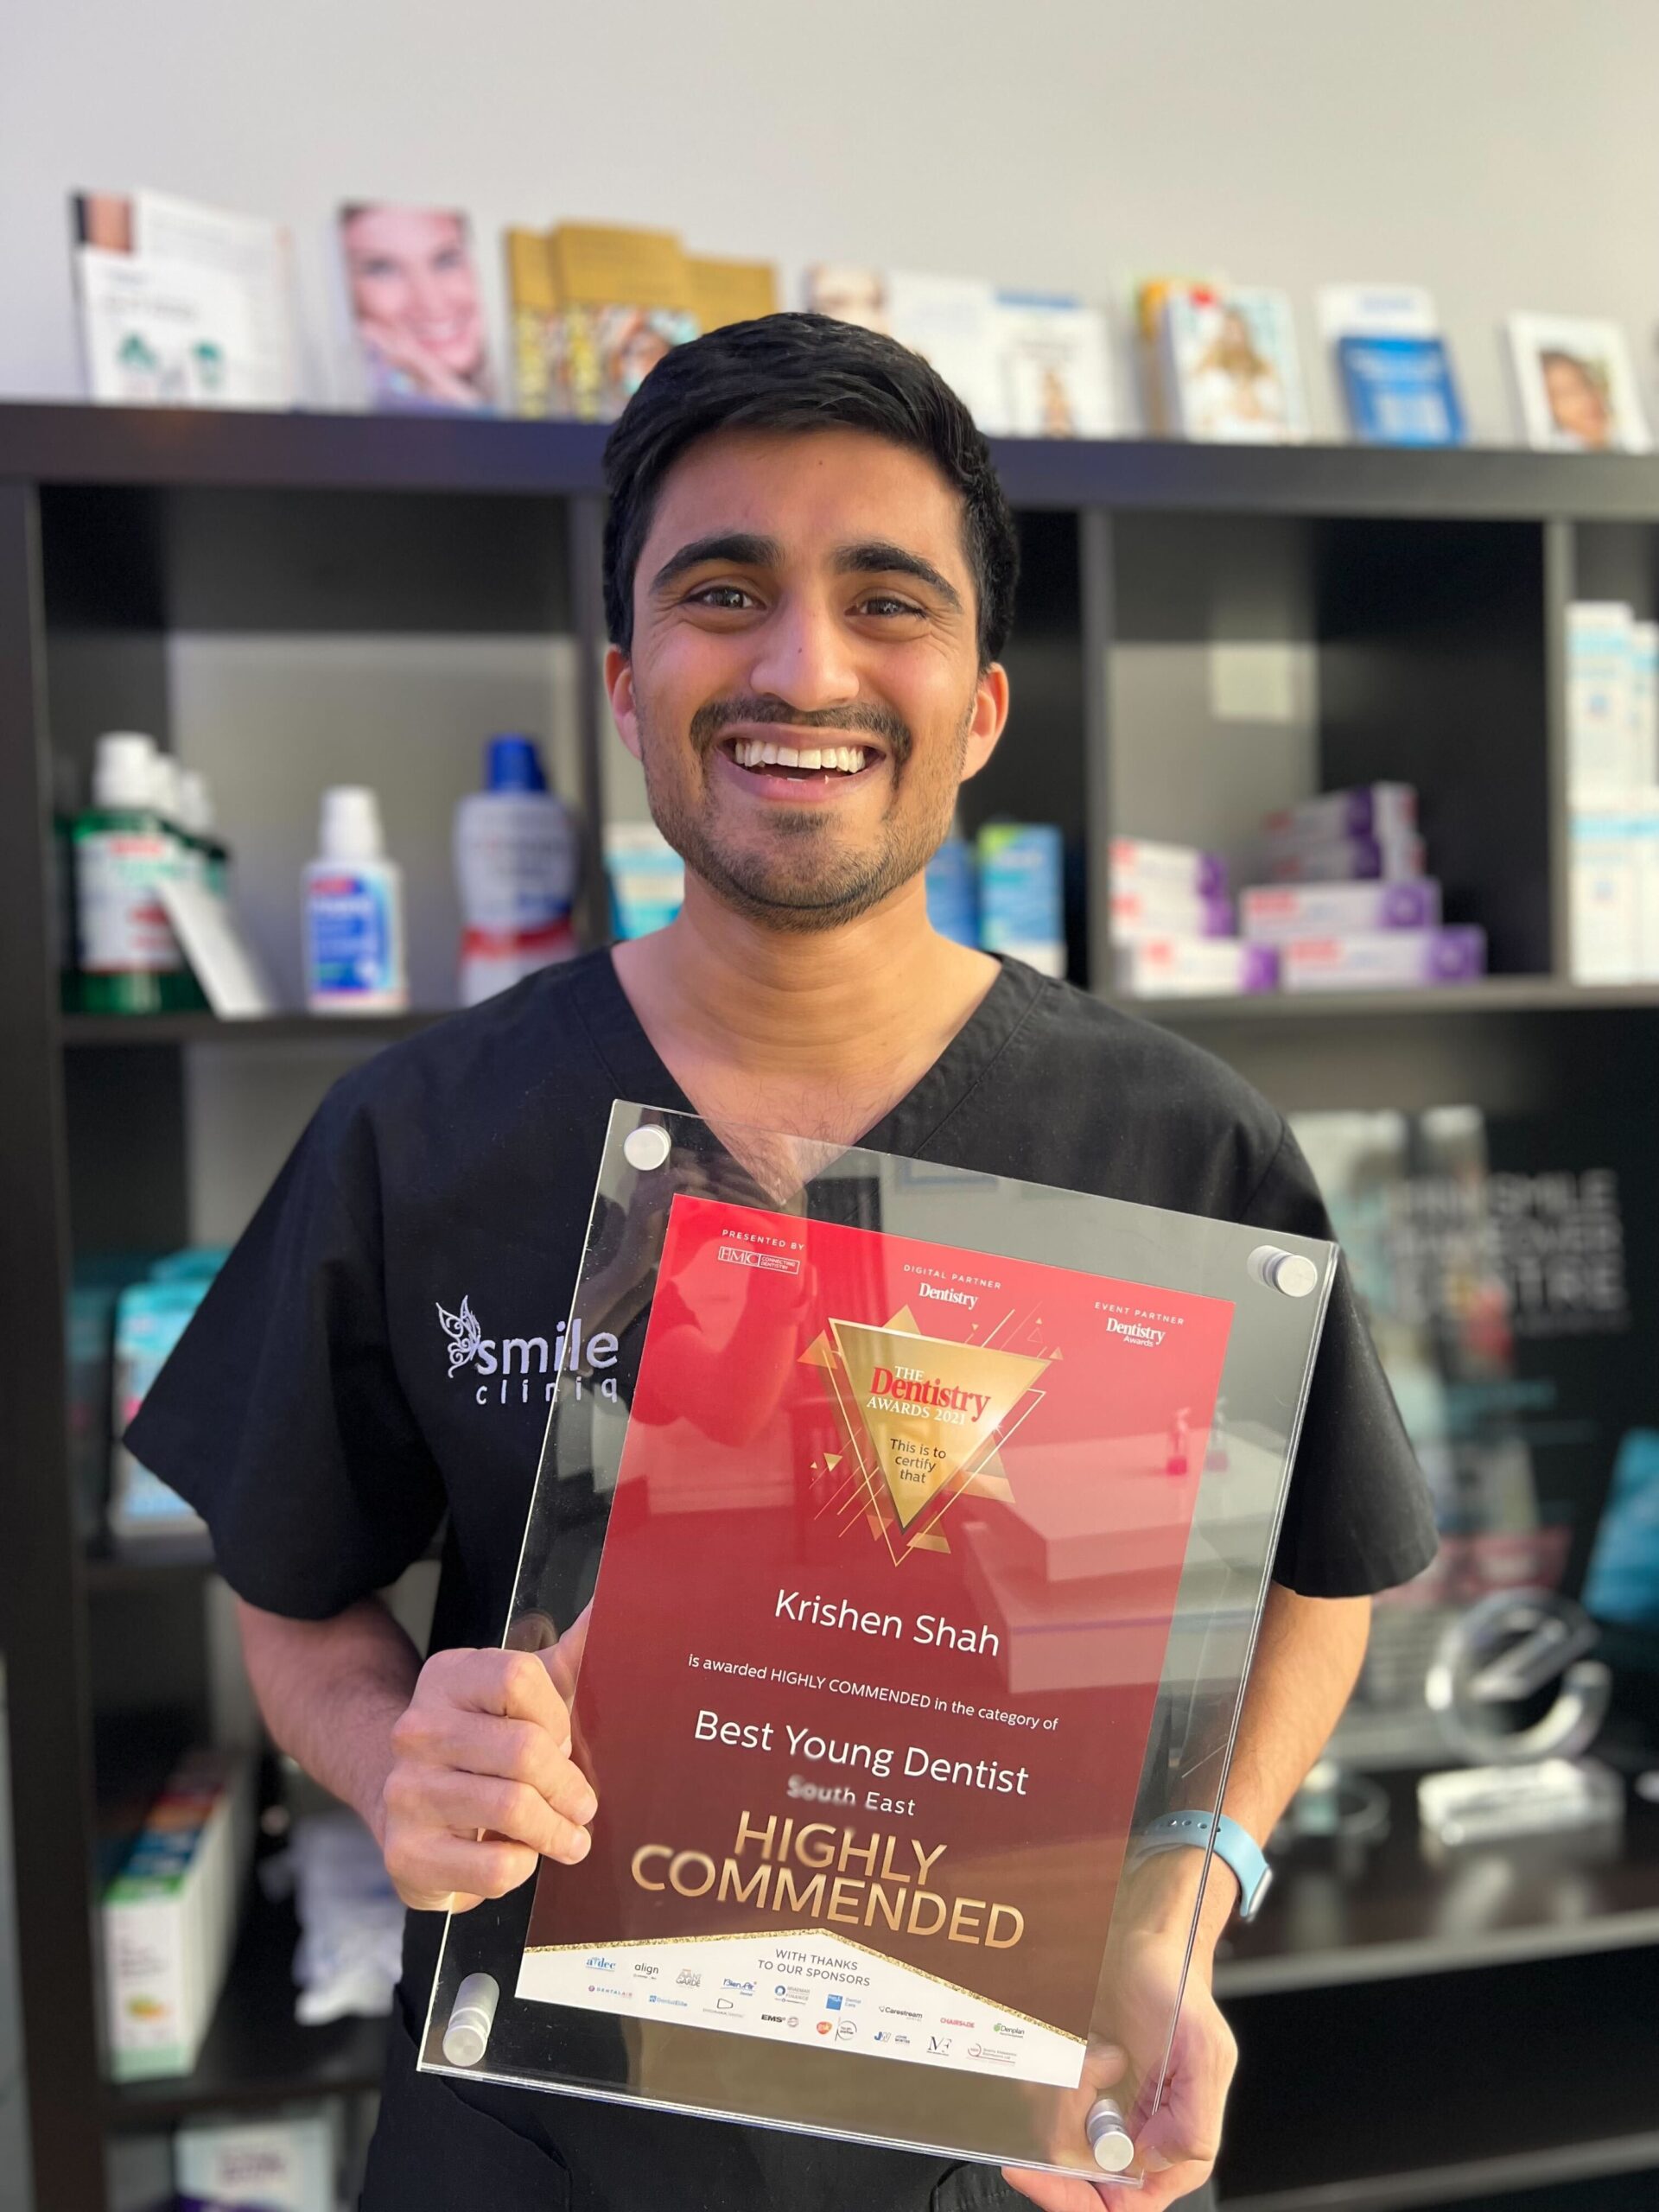 Best London Dentist Awarded to Dr Krishen Shah